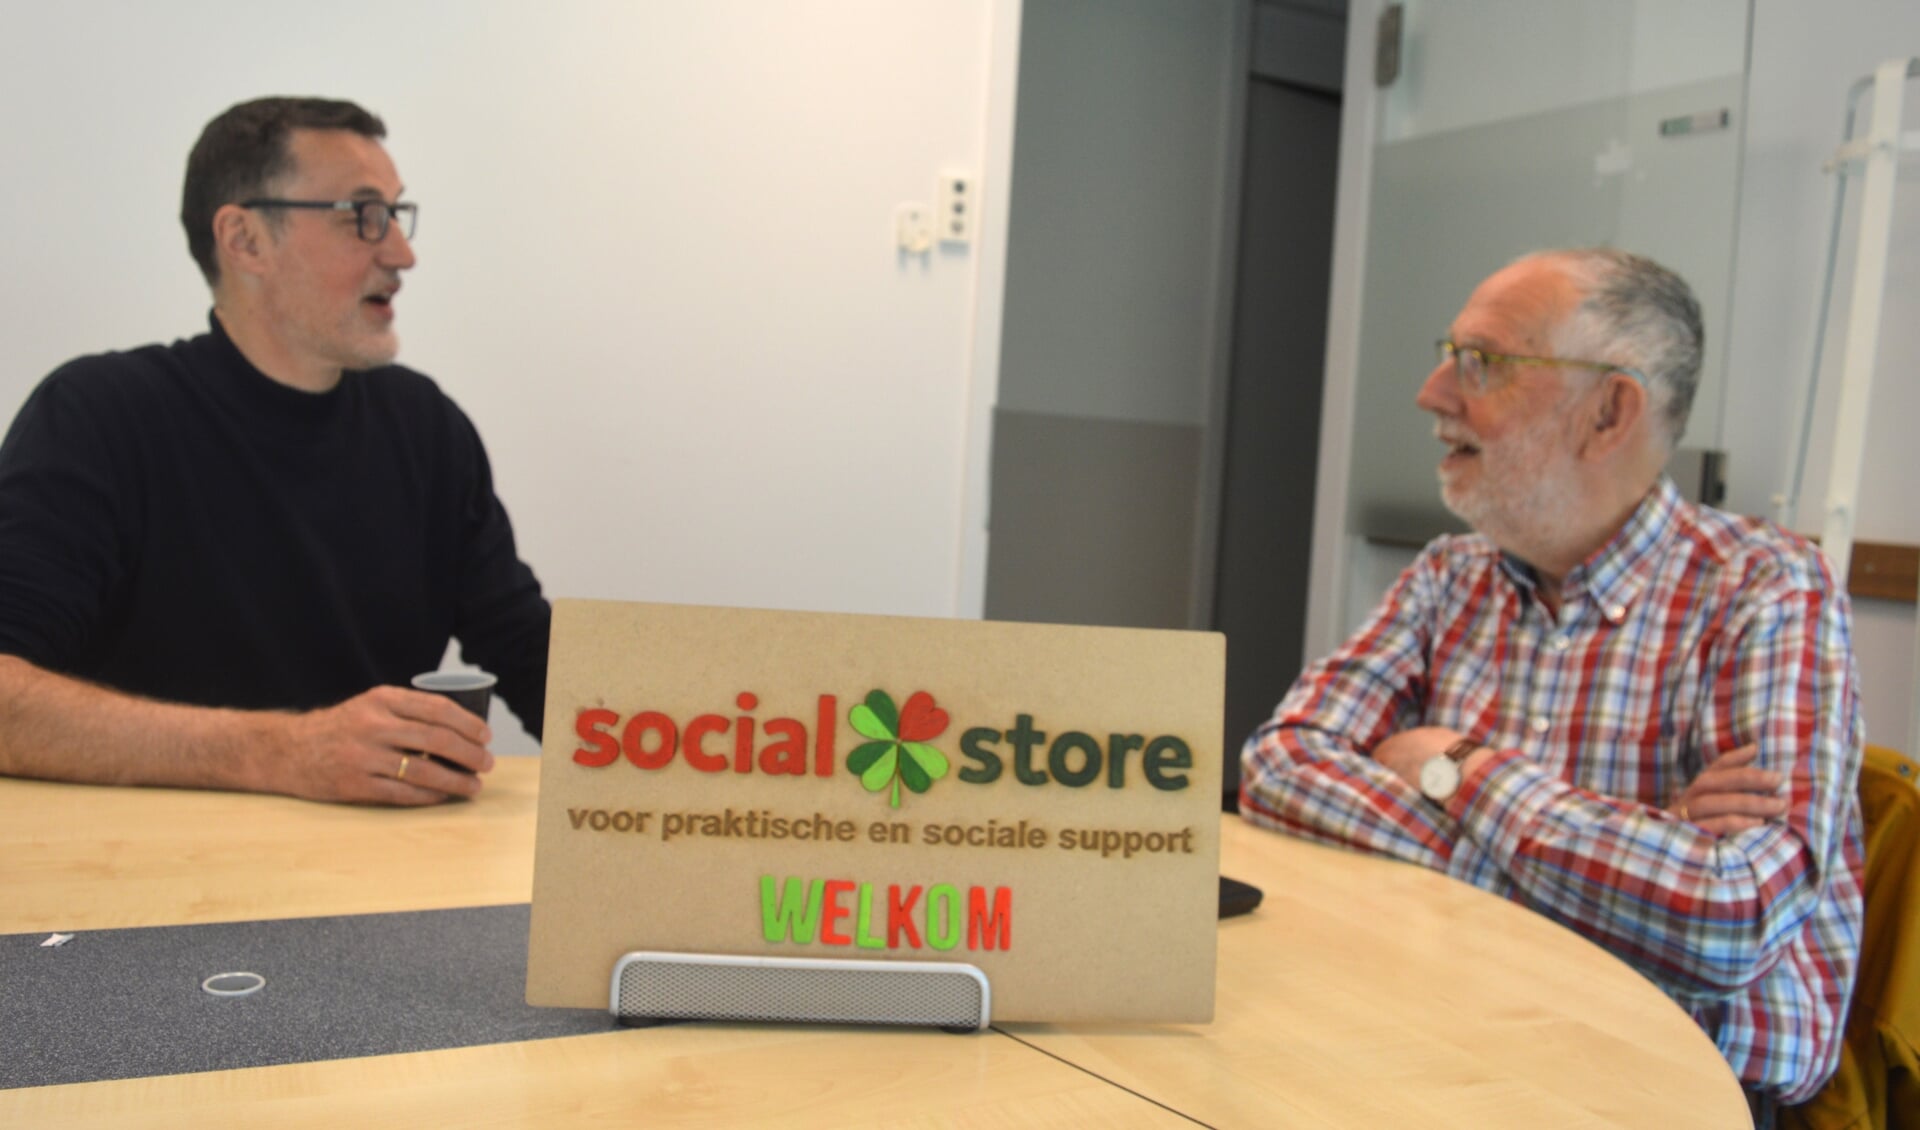 Maarten Thanis en Maarten de Keizer praten bij over de Social Store